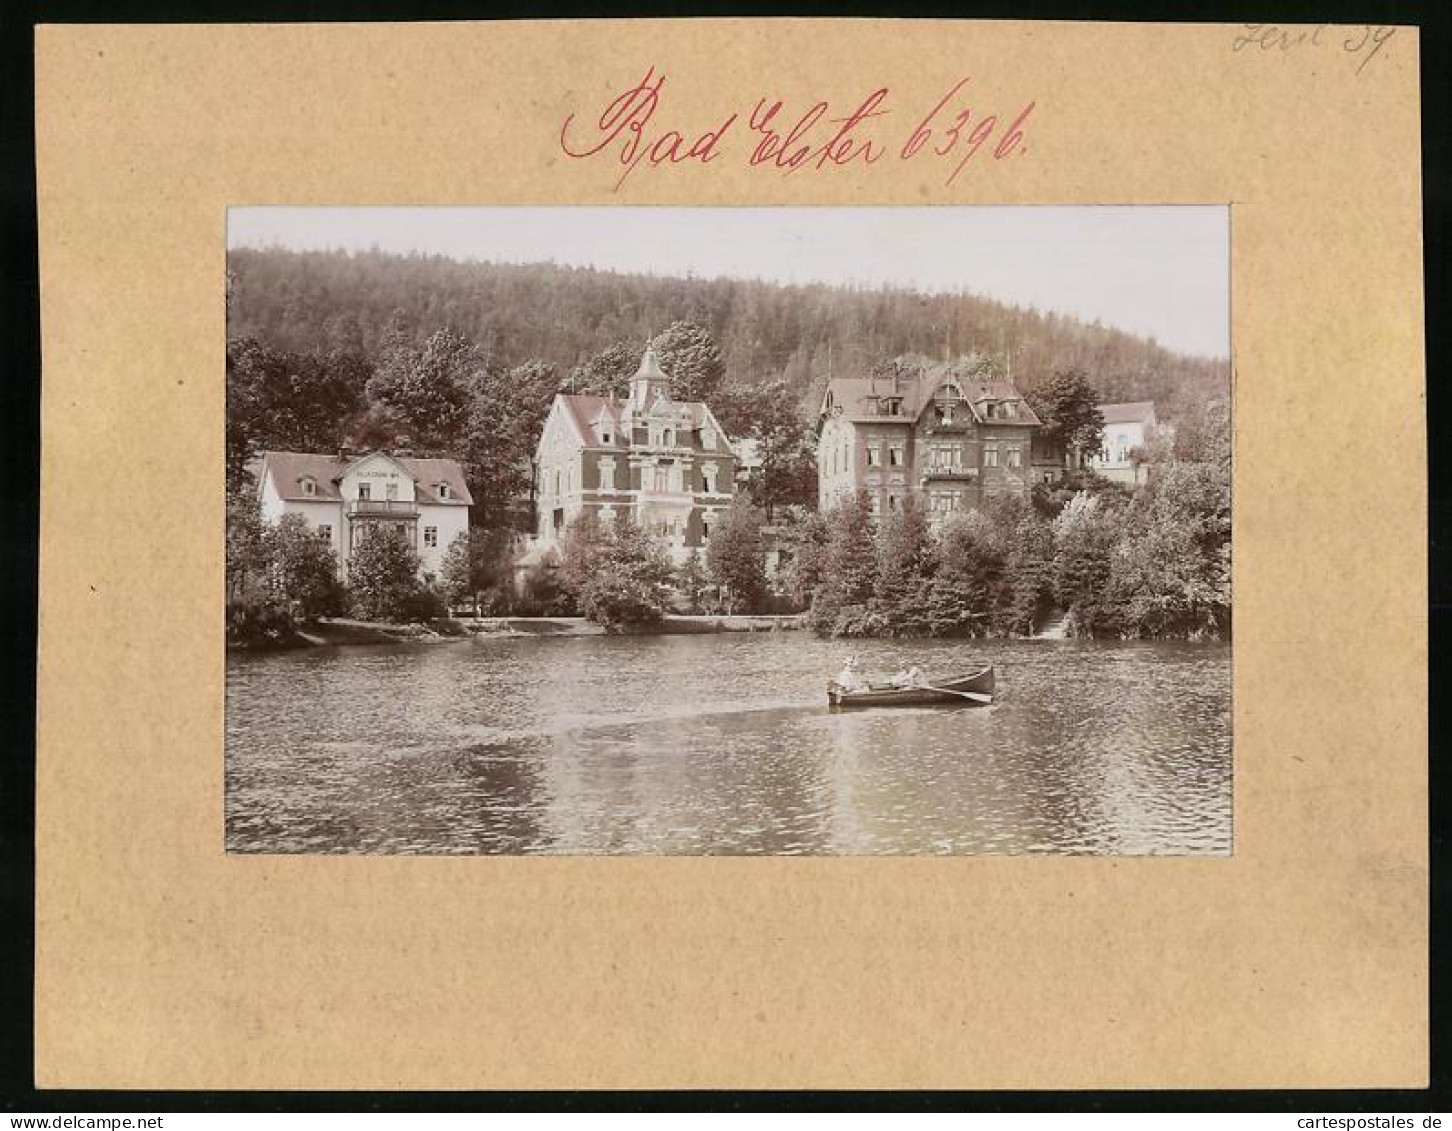 Fotografie Brück & Sohn Meissen, Ansicht Bad Elster, Partie Luisasee Mit Villa Gr. Aue, Villa Abbazia, Schloss Miramar  - Lieux